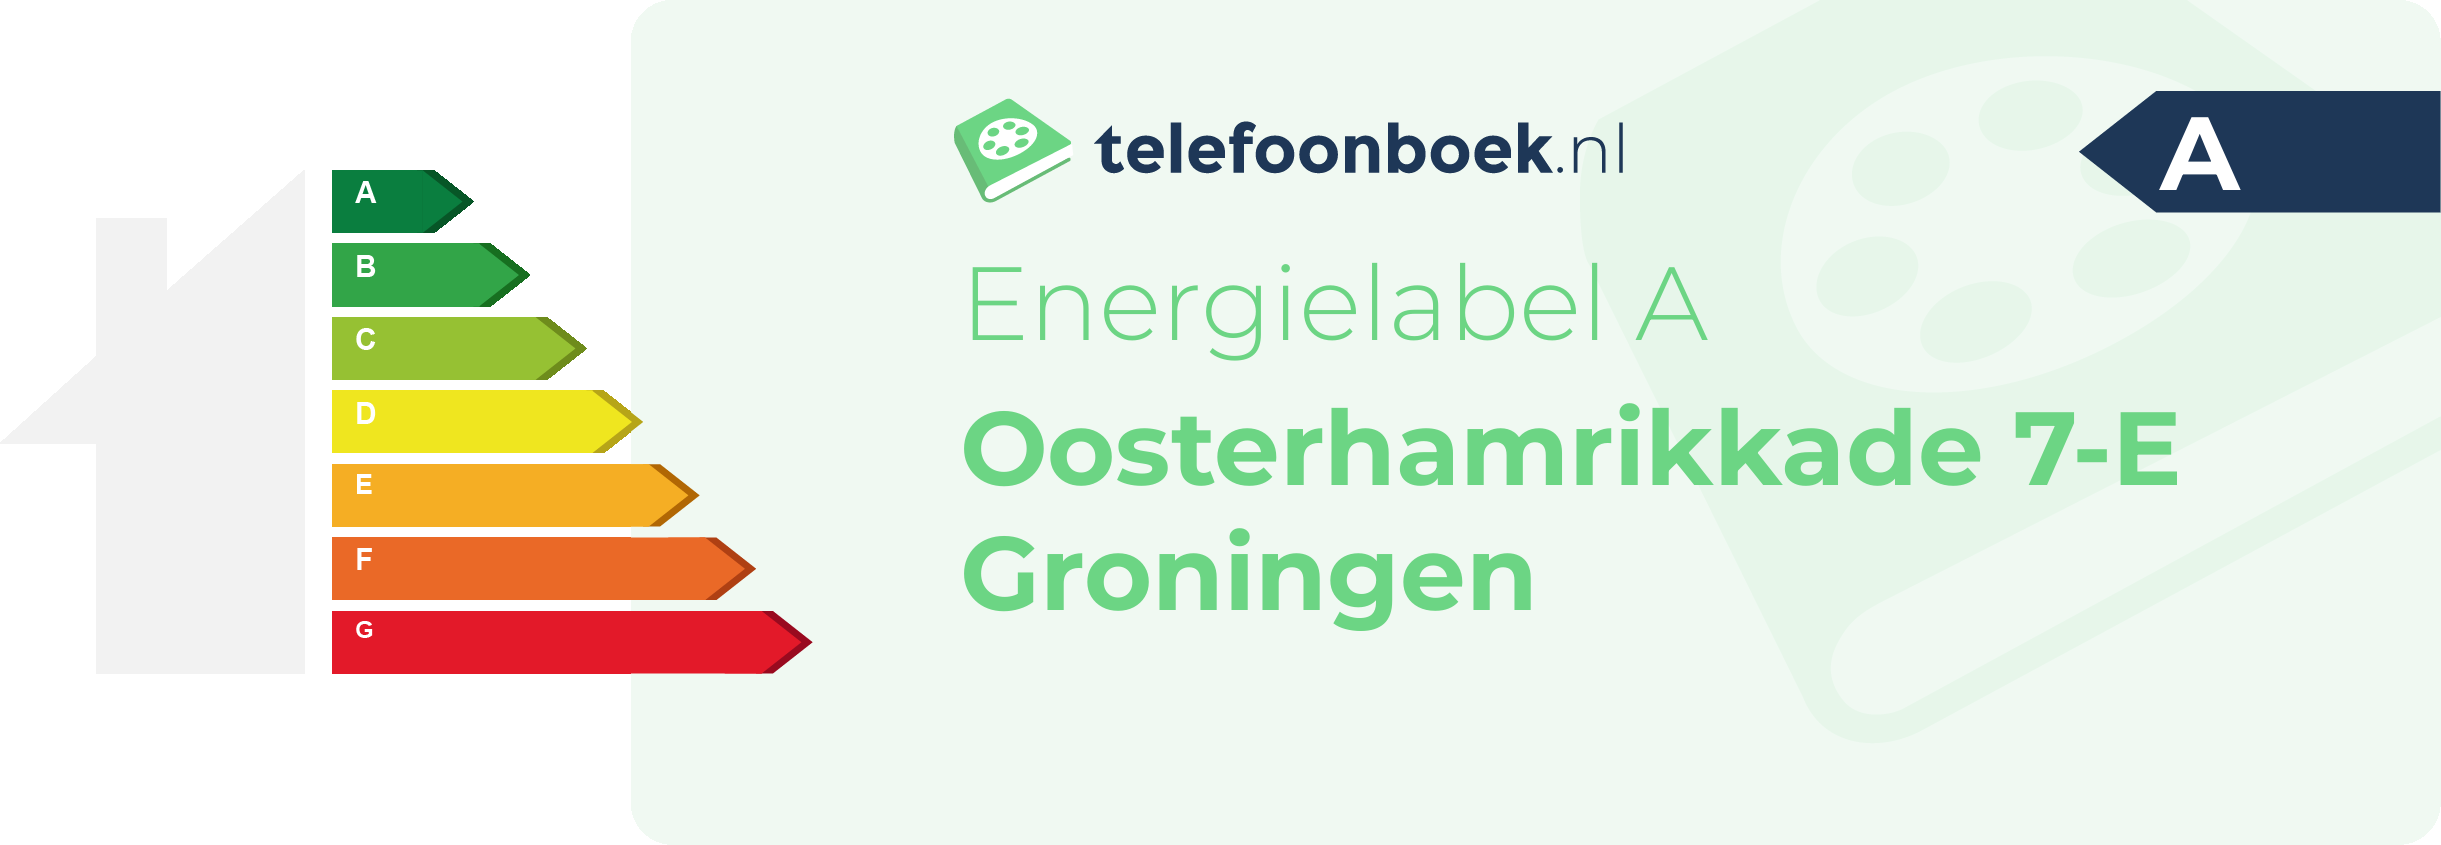 Energielabel Oosterhamrikkade 7-E Groningen